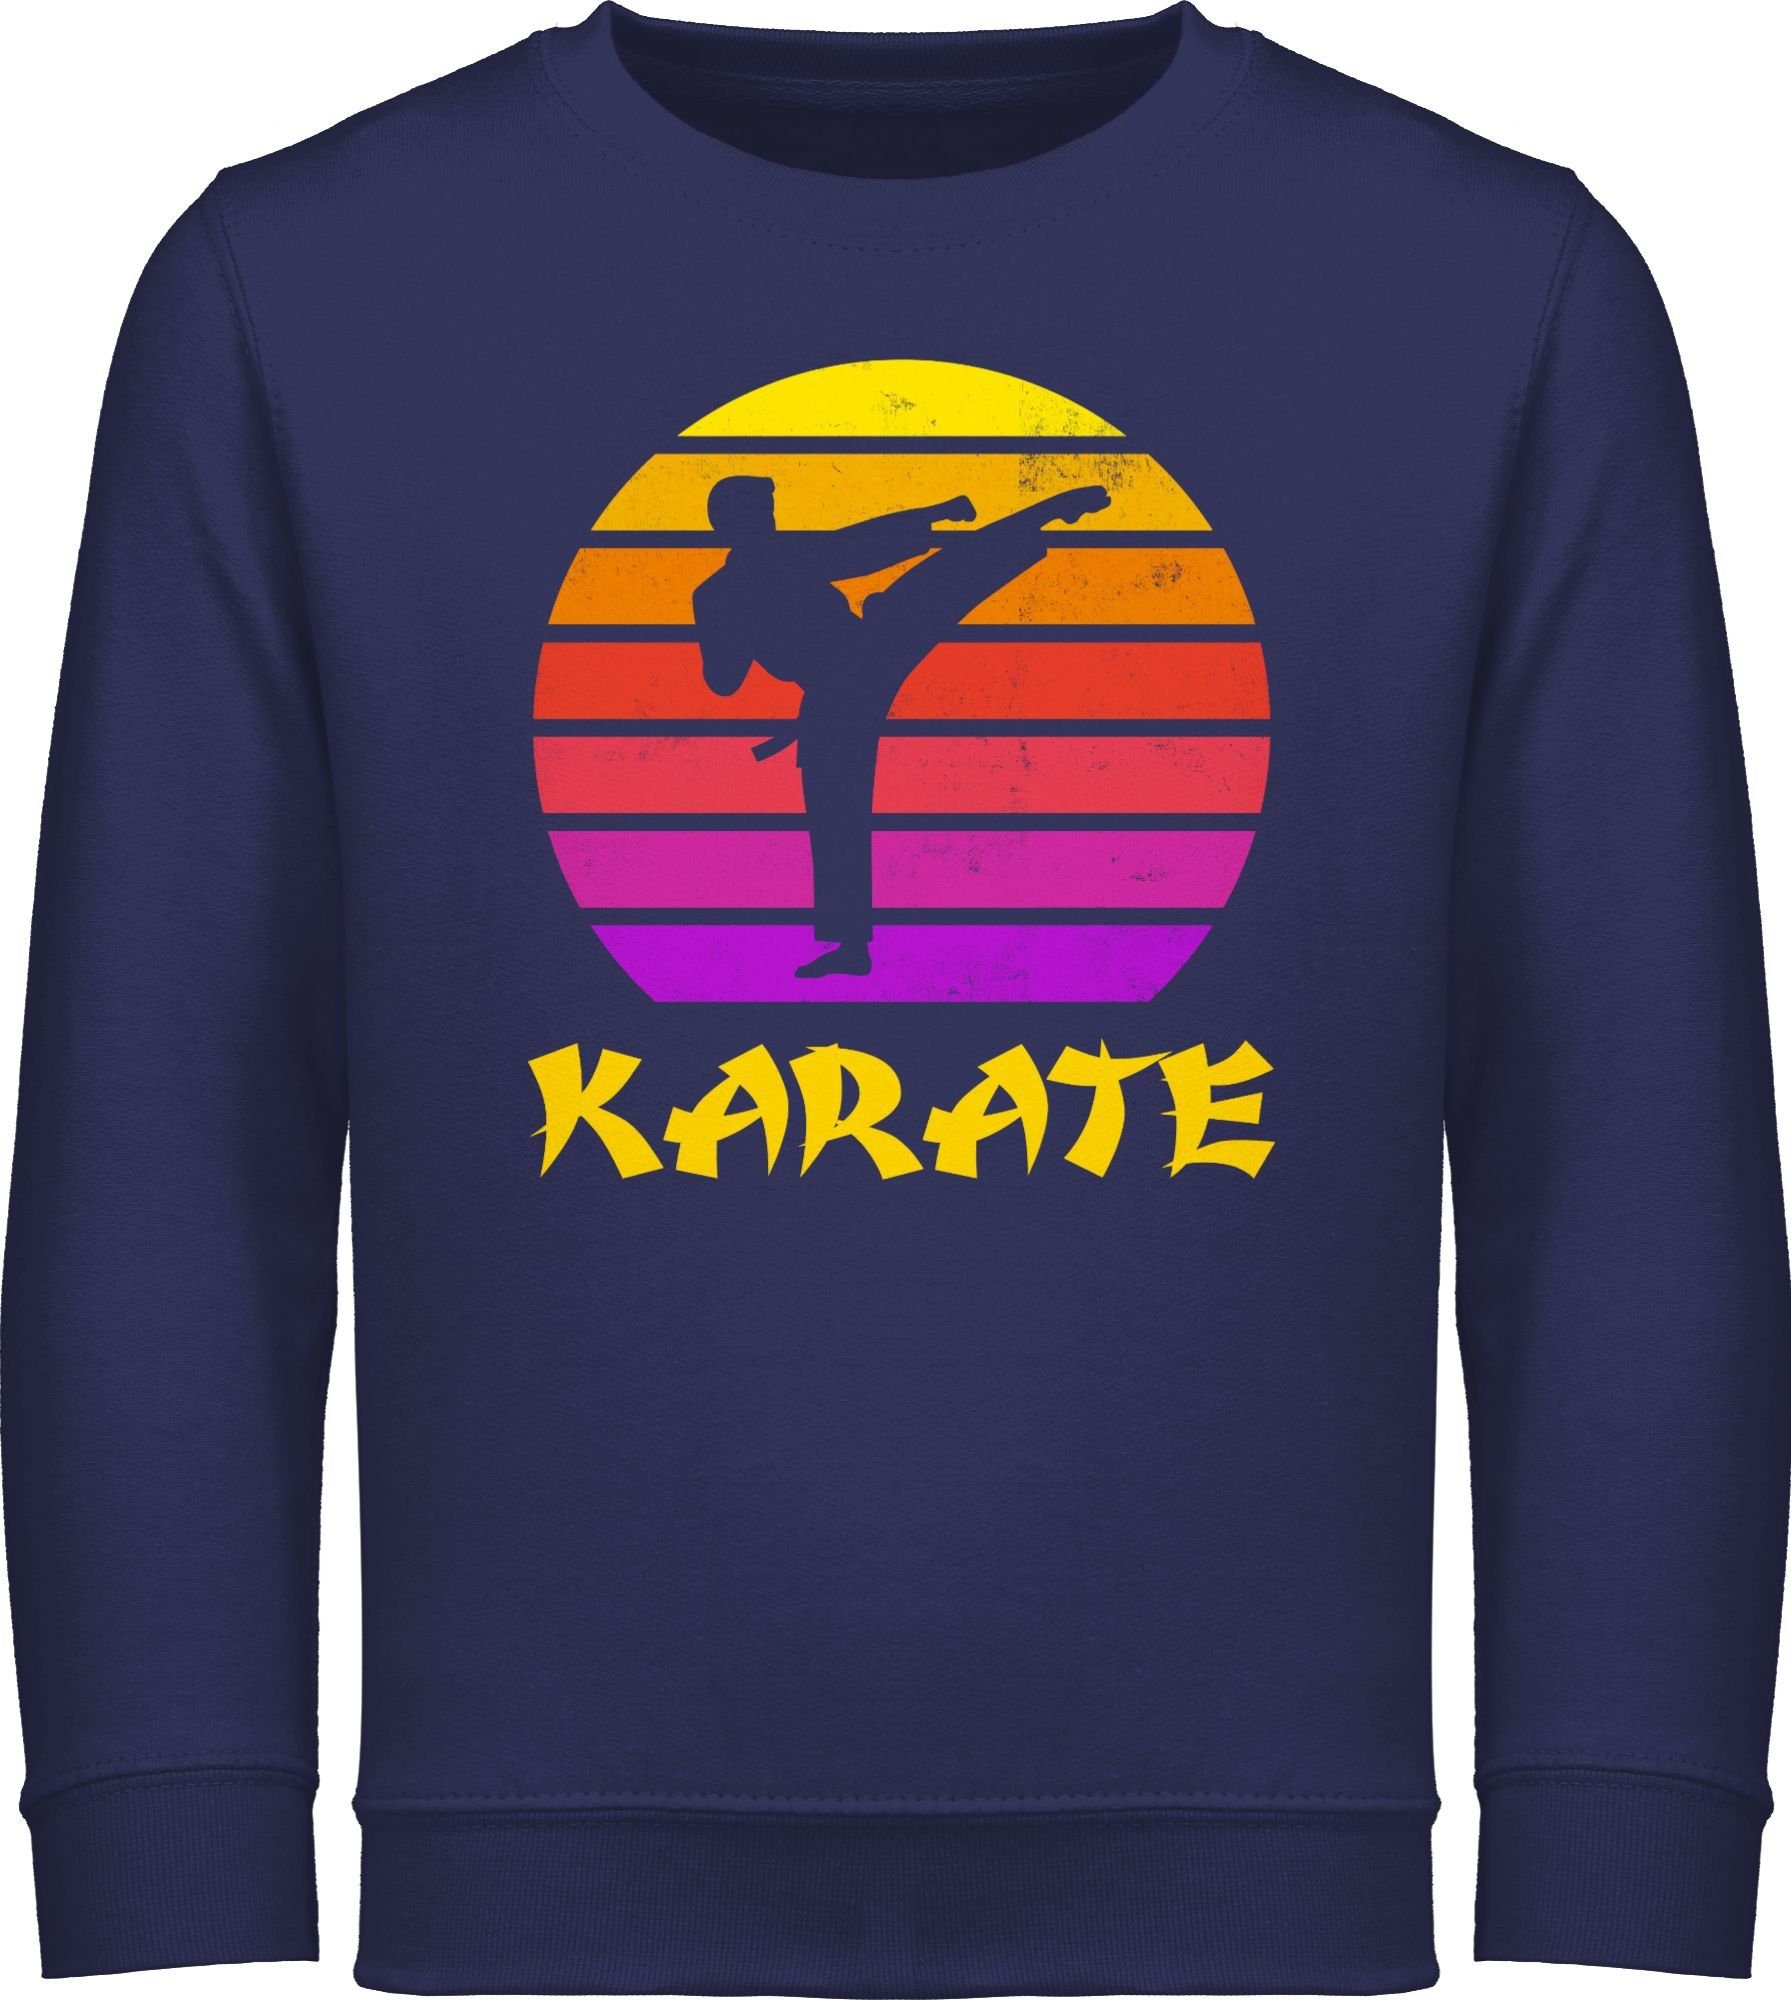 Shirtracer Sweatshirt Karate Retro Sonne Kinder Sport Kleidung 3 Navy Blau